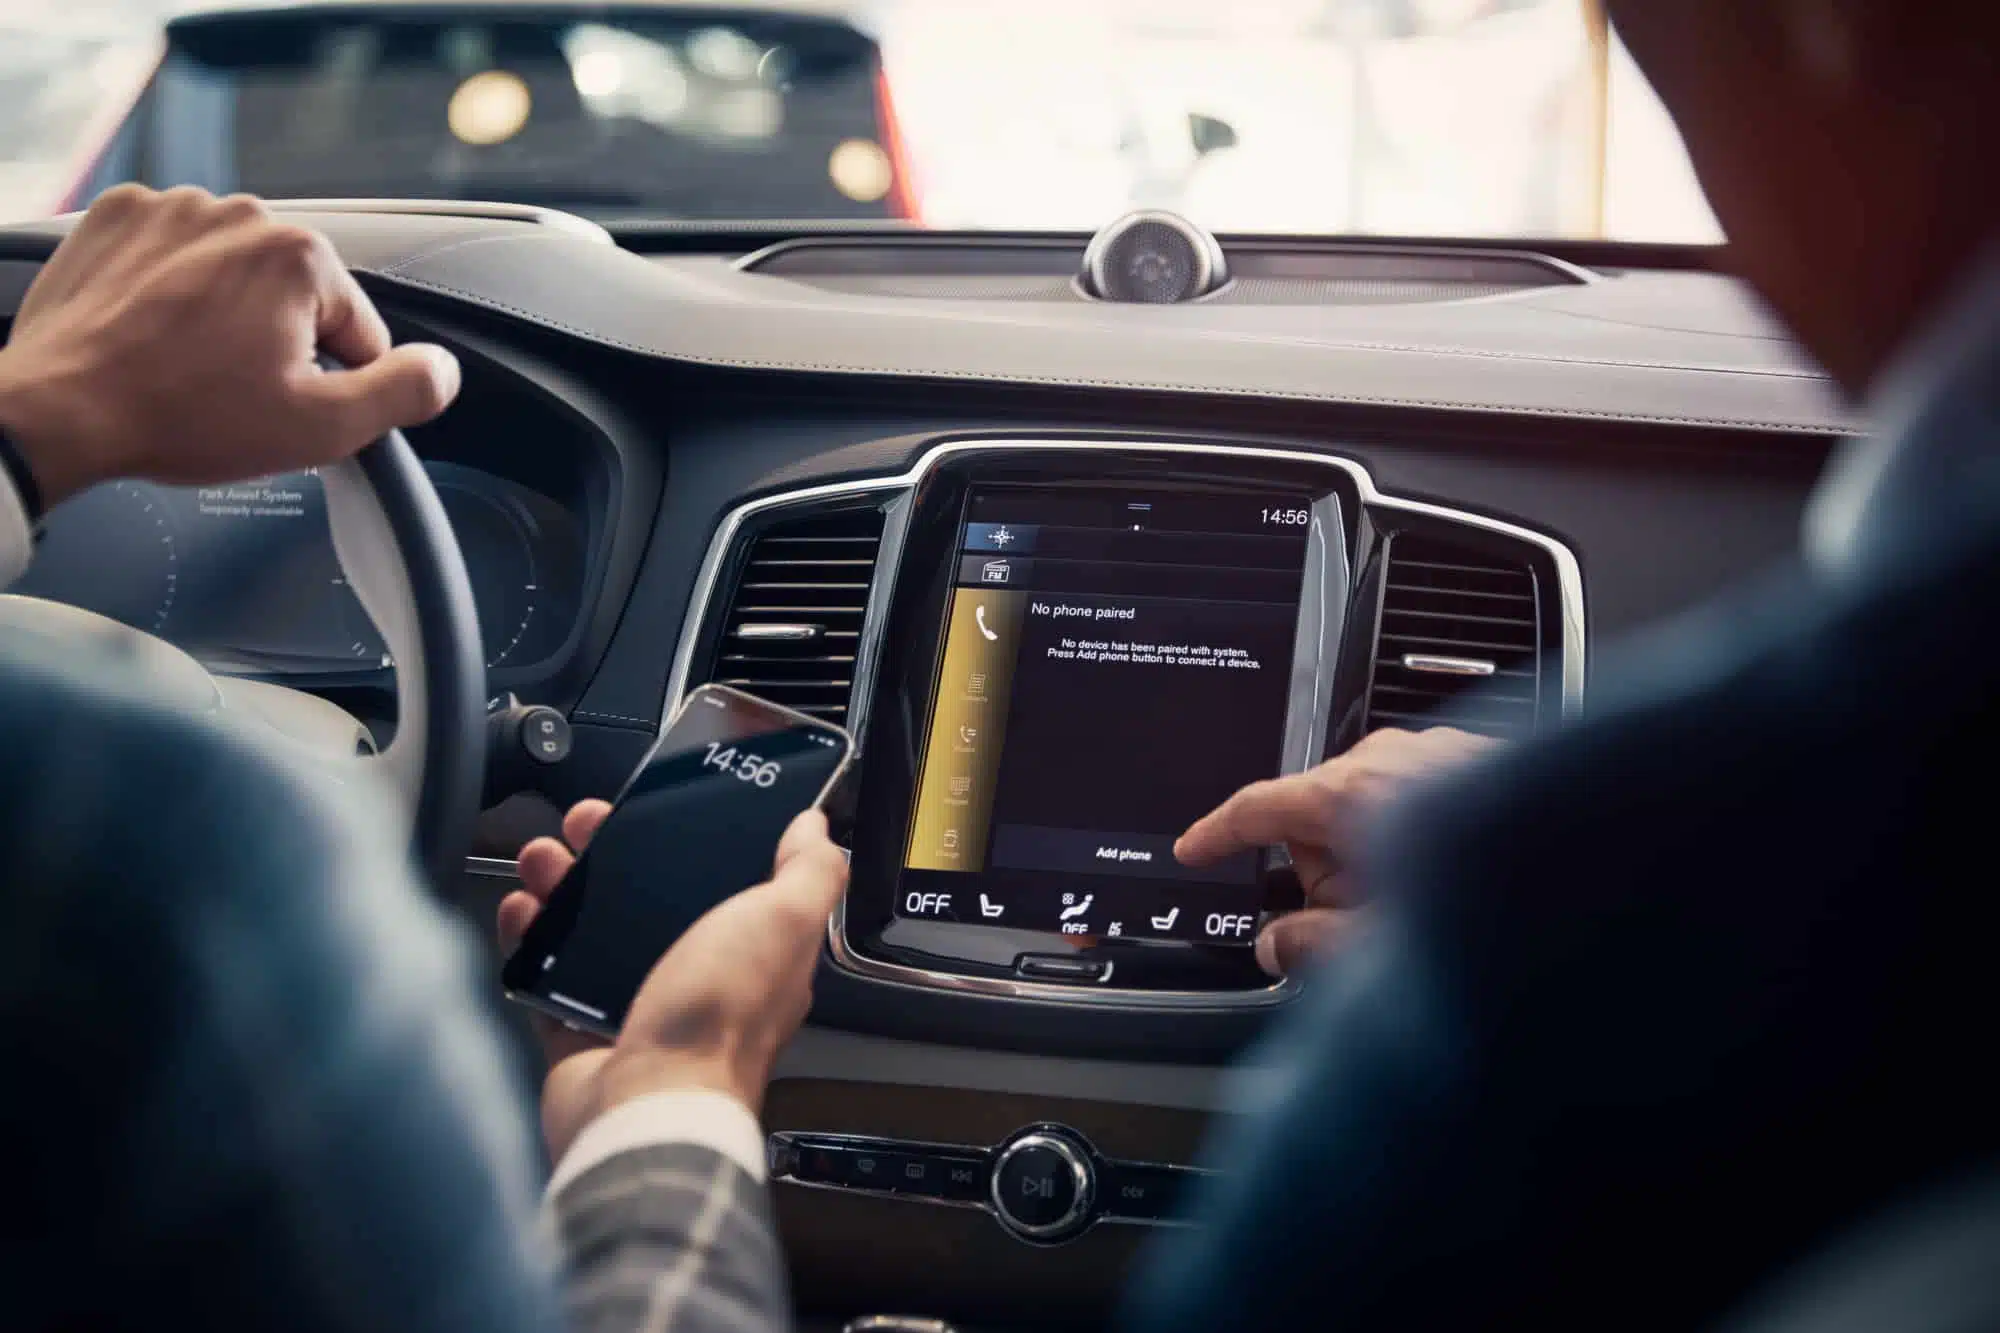 Två personer sitter i en bil. Den ena håller en mobiltelefon i handen, den andra trycker på bilens display.